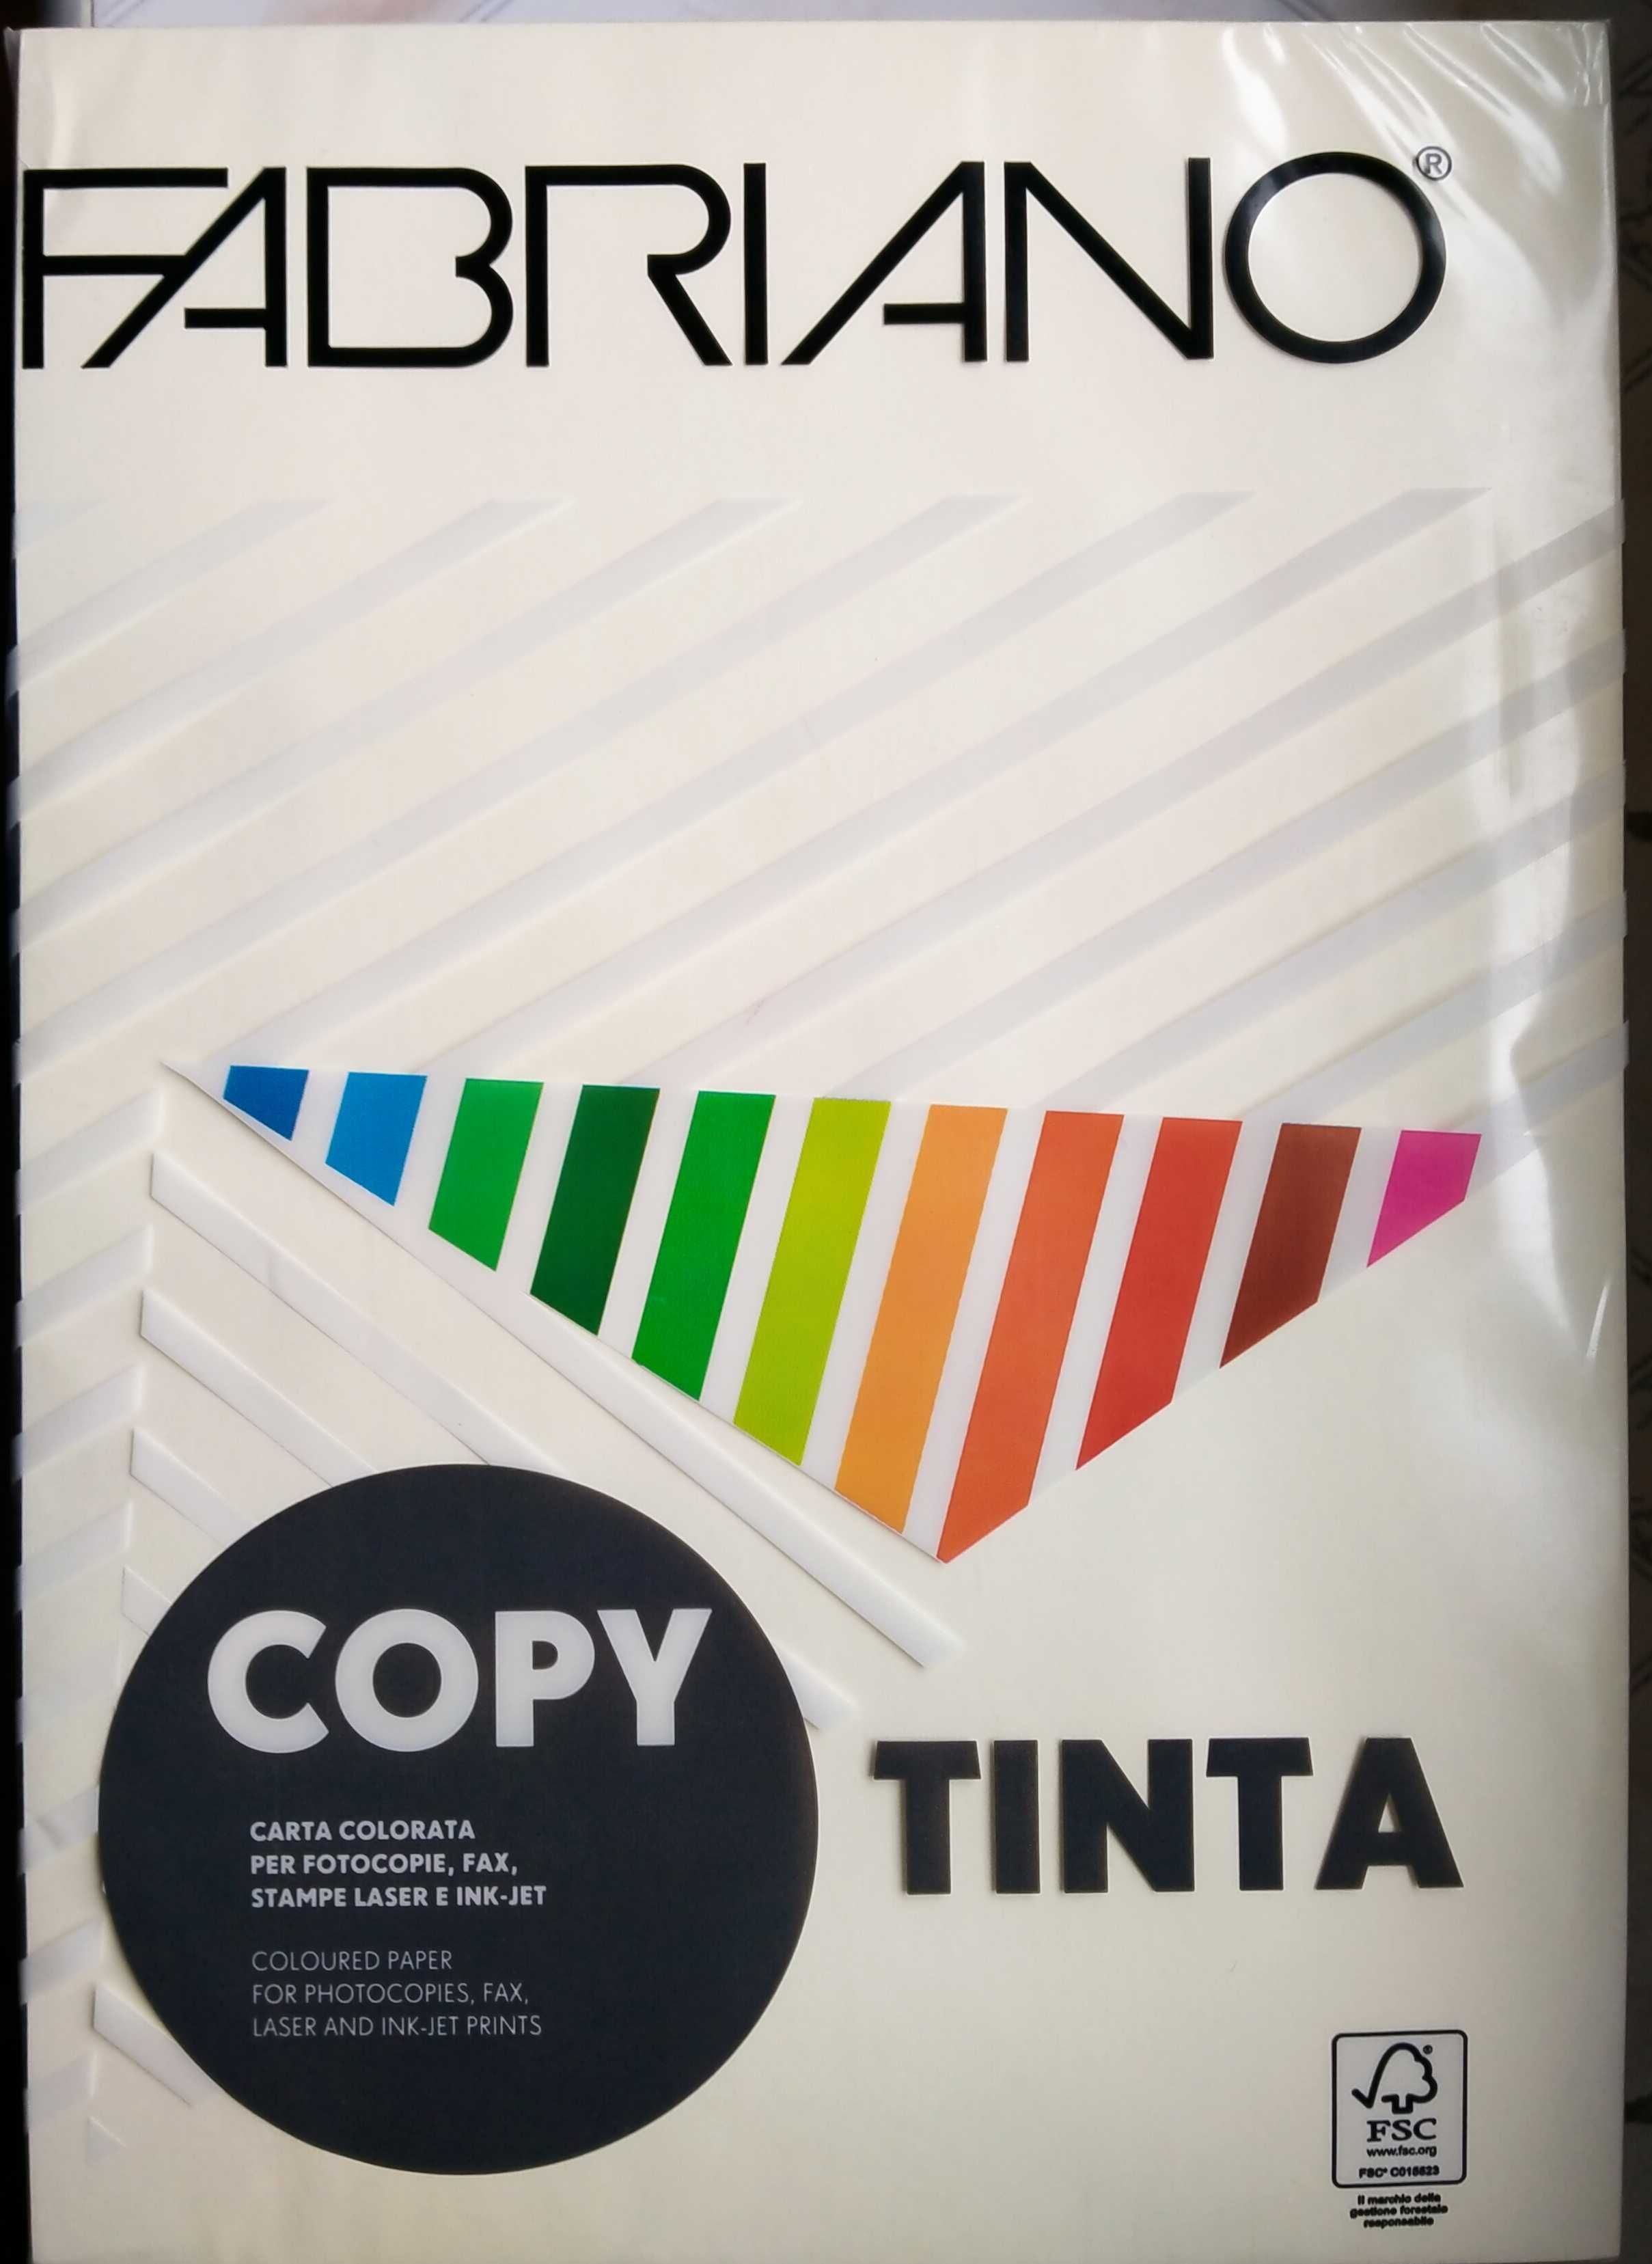 Nowy papier do drukarki Fabriano tinta kolorowy - możliwa wysyłka